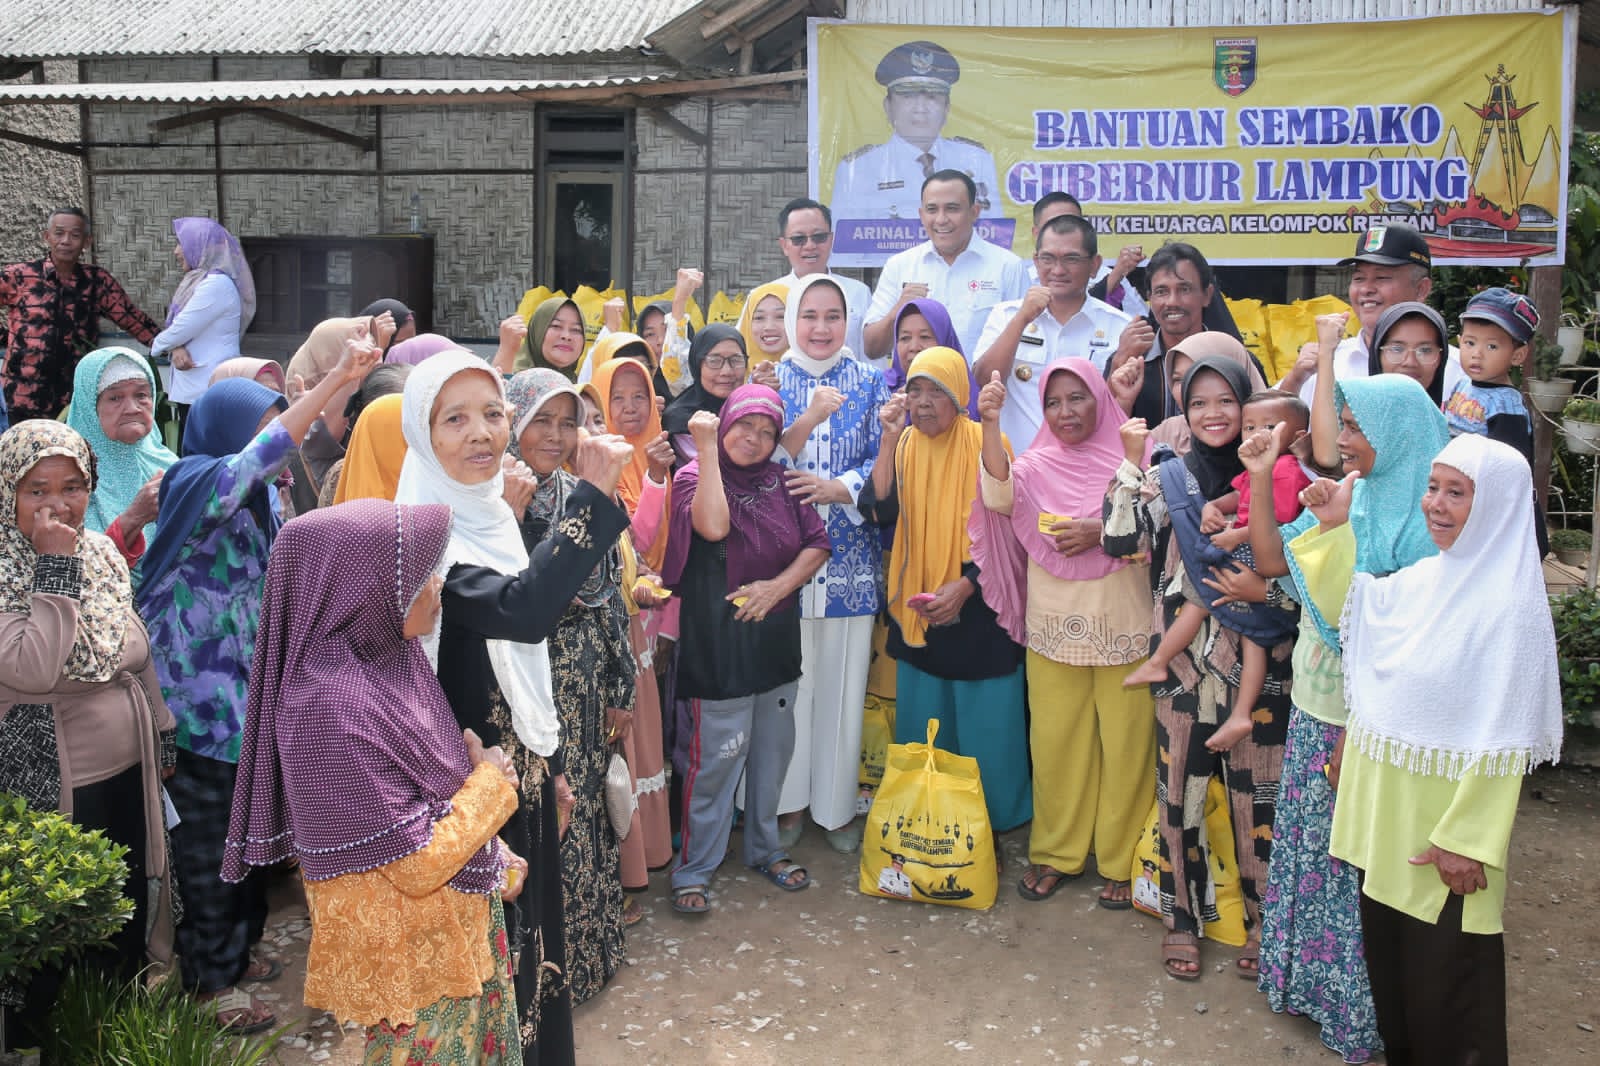 Bantuan Sembako Gubernur Lampung